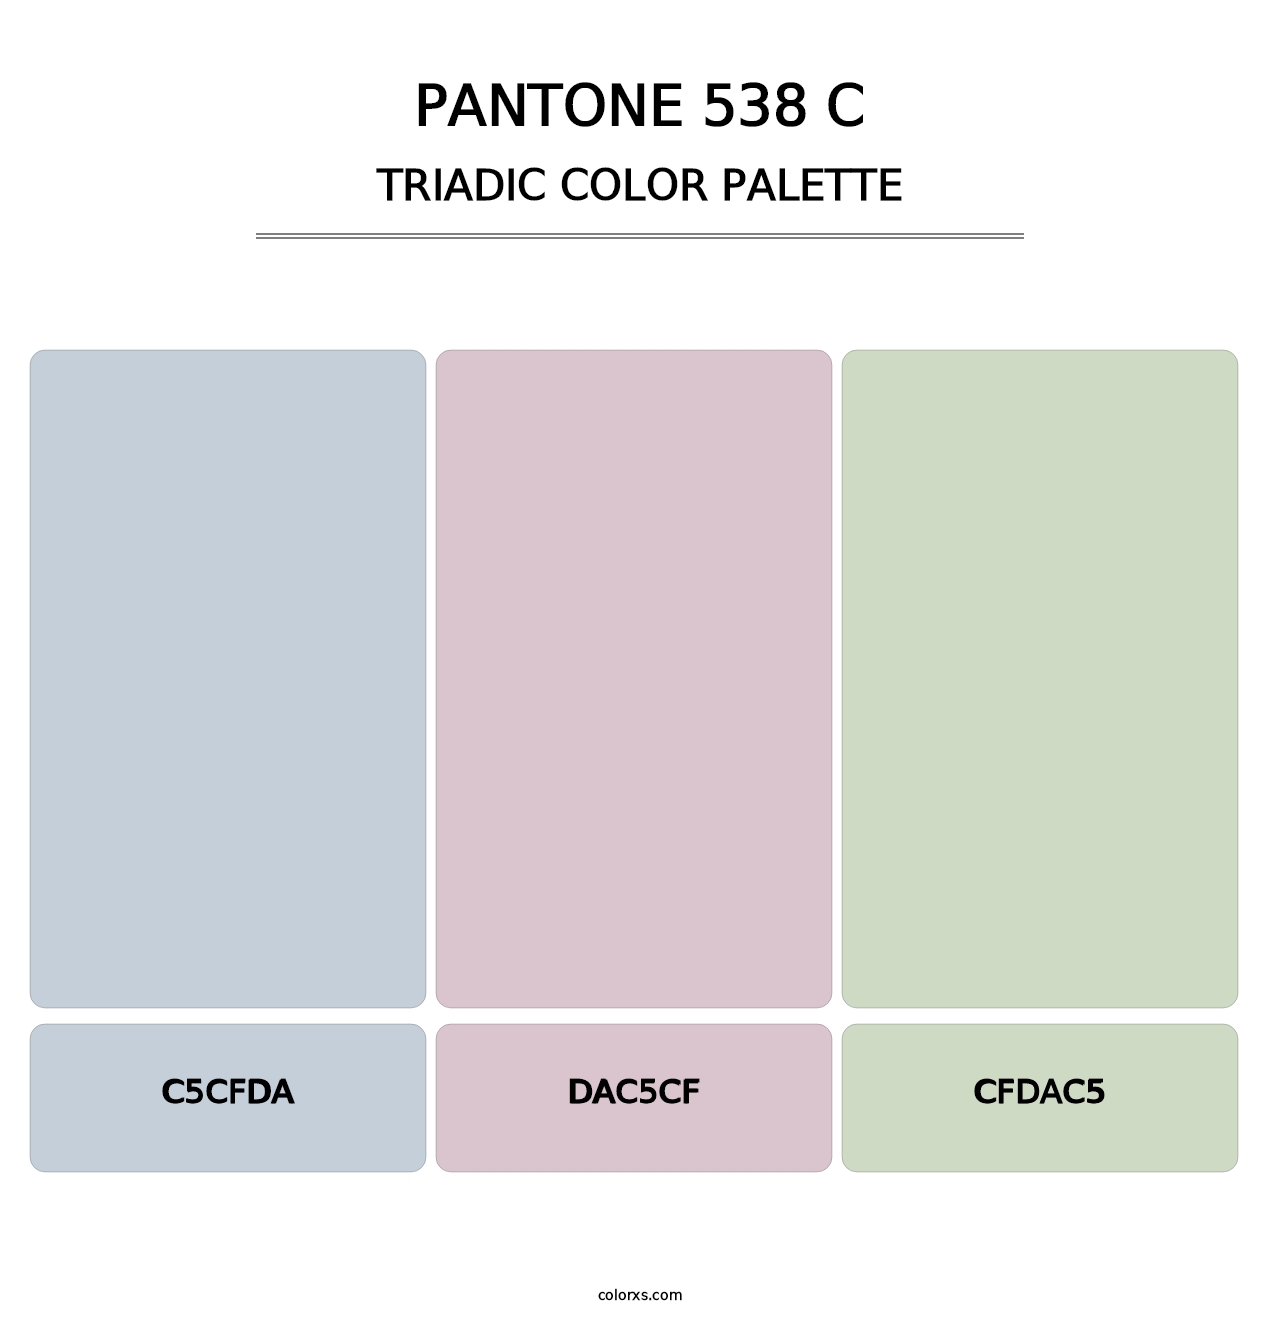 PANTONE 538 C - Triadic Color Palette